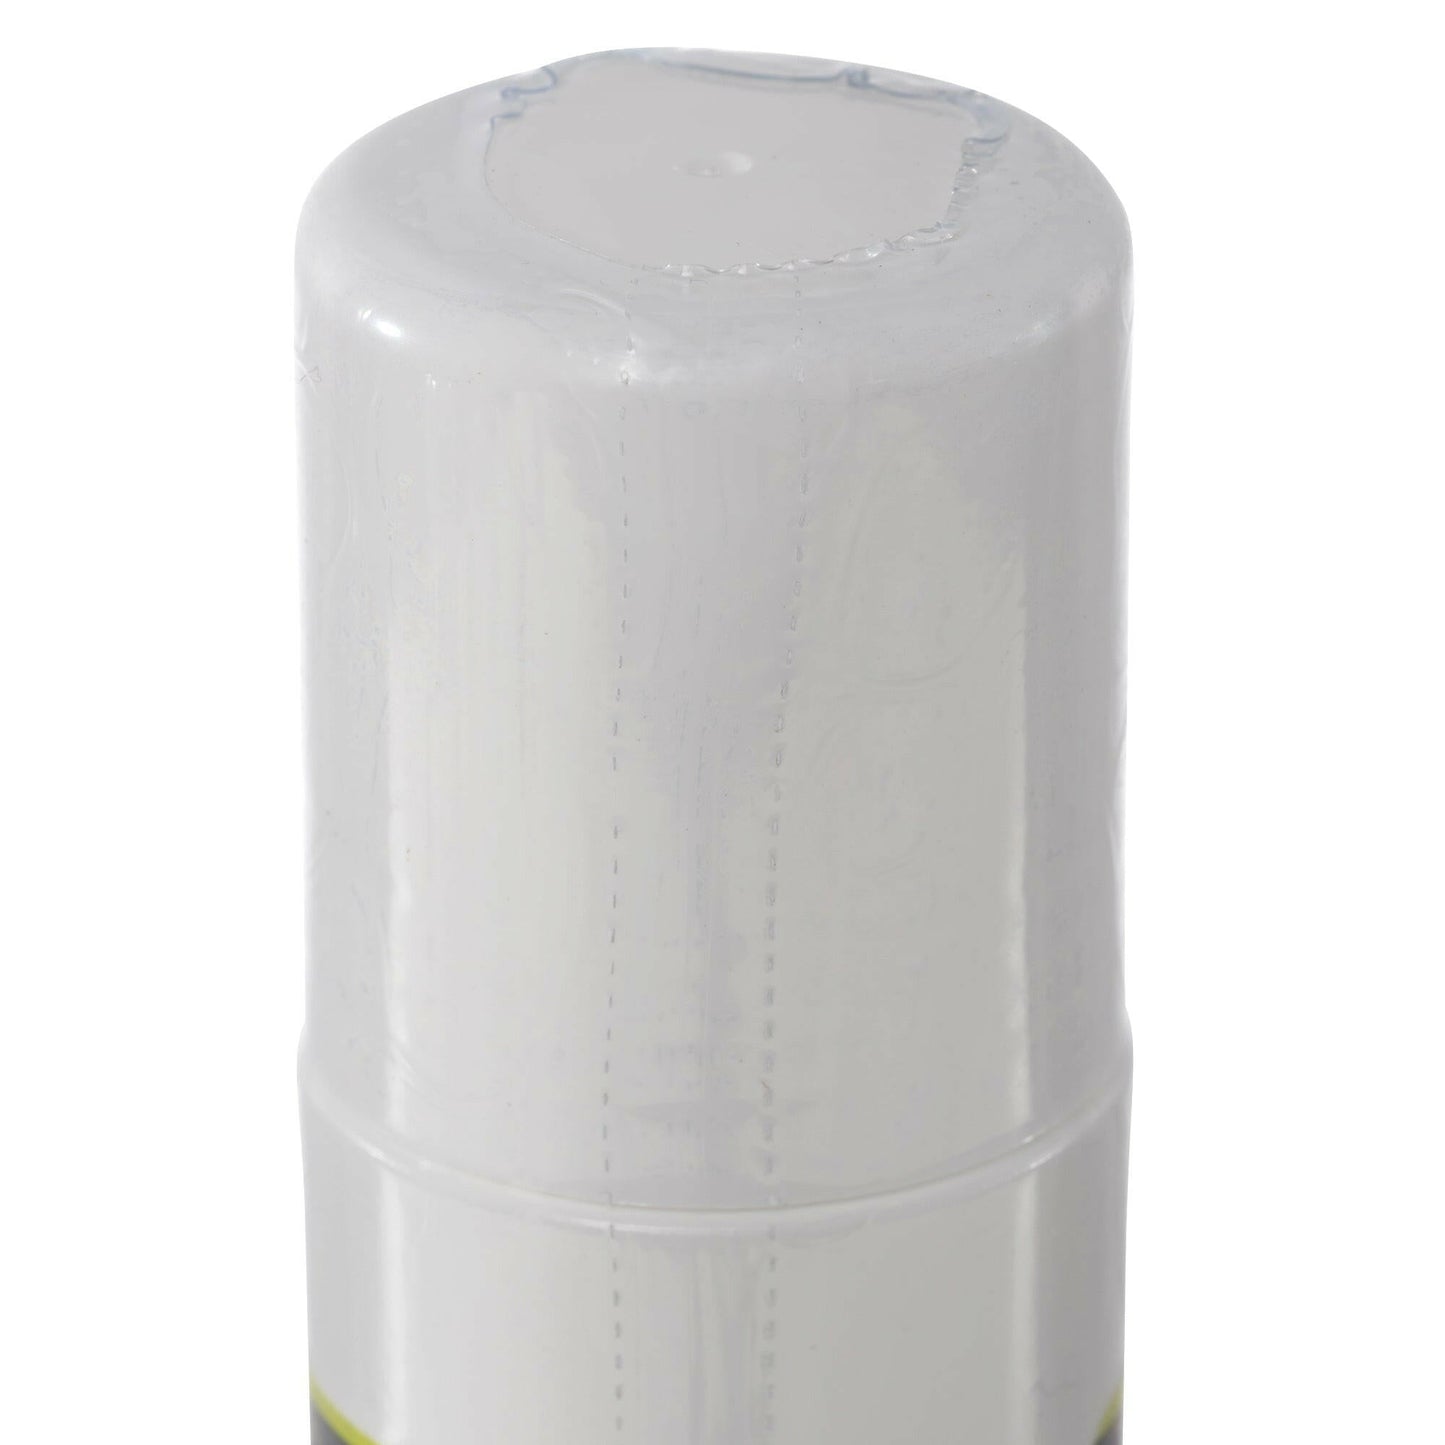 DMSO 70/30 3 oz. Aloe Vera Roll-on Super Biologic 3 Bottle Special 99.995% Low Odor Pharma Grade in BPA Free Plastic - dmsostore